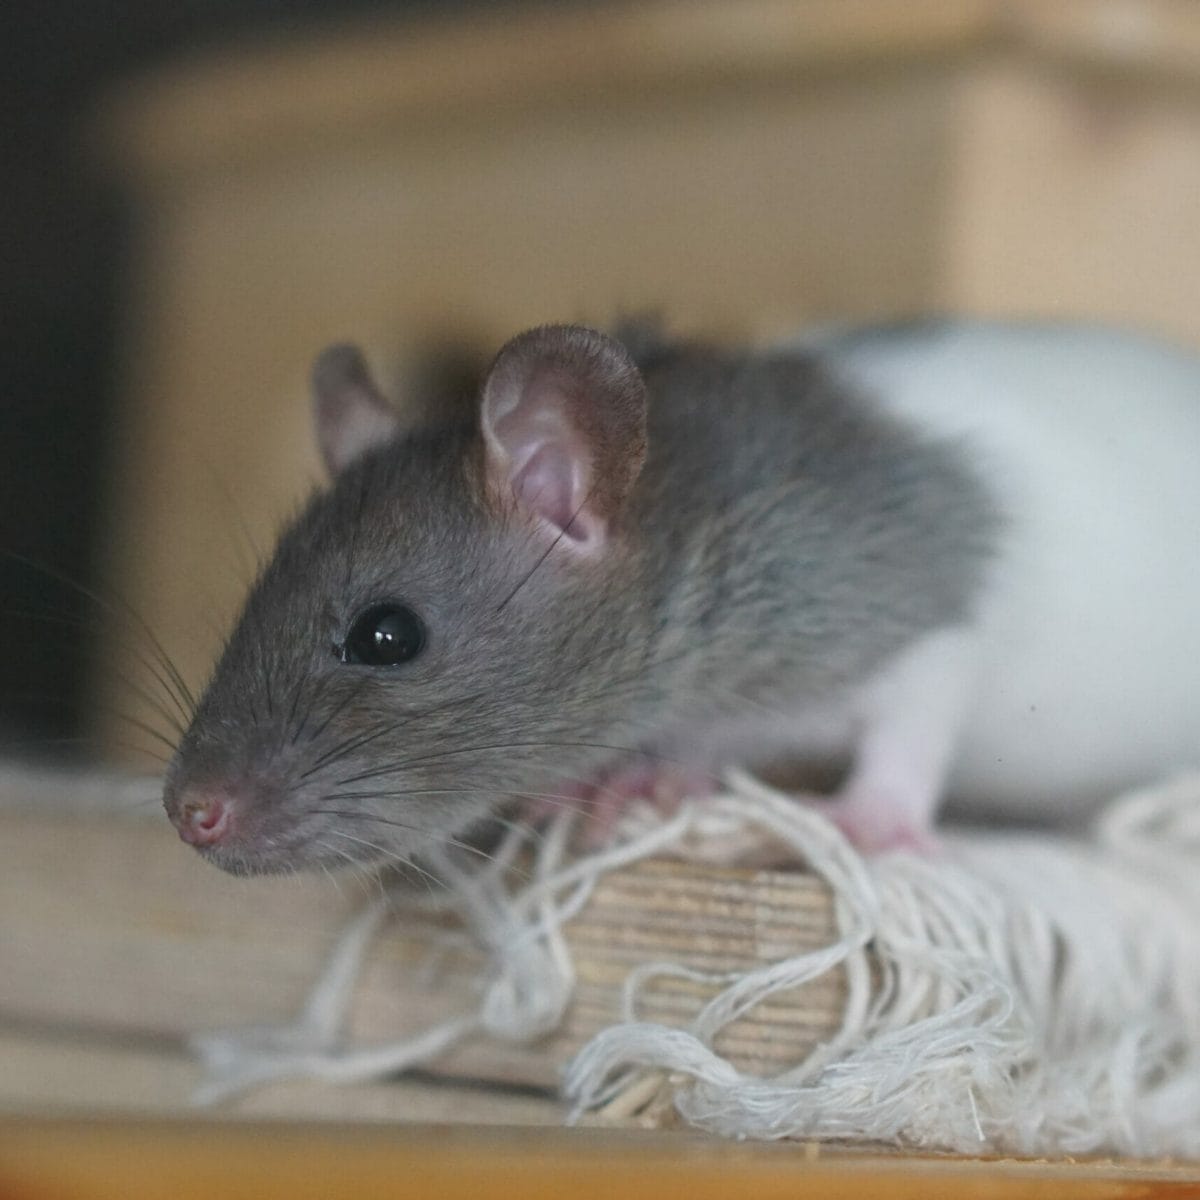 Come allontanare i topi in modo naturale e senza ucciderli